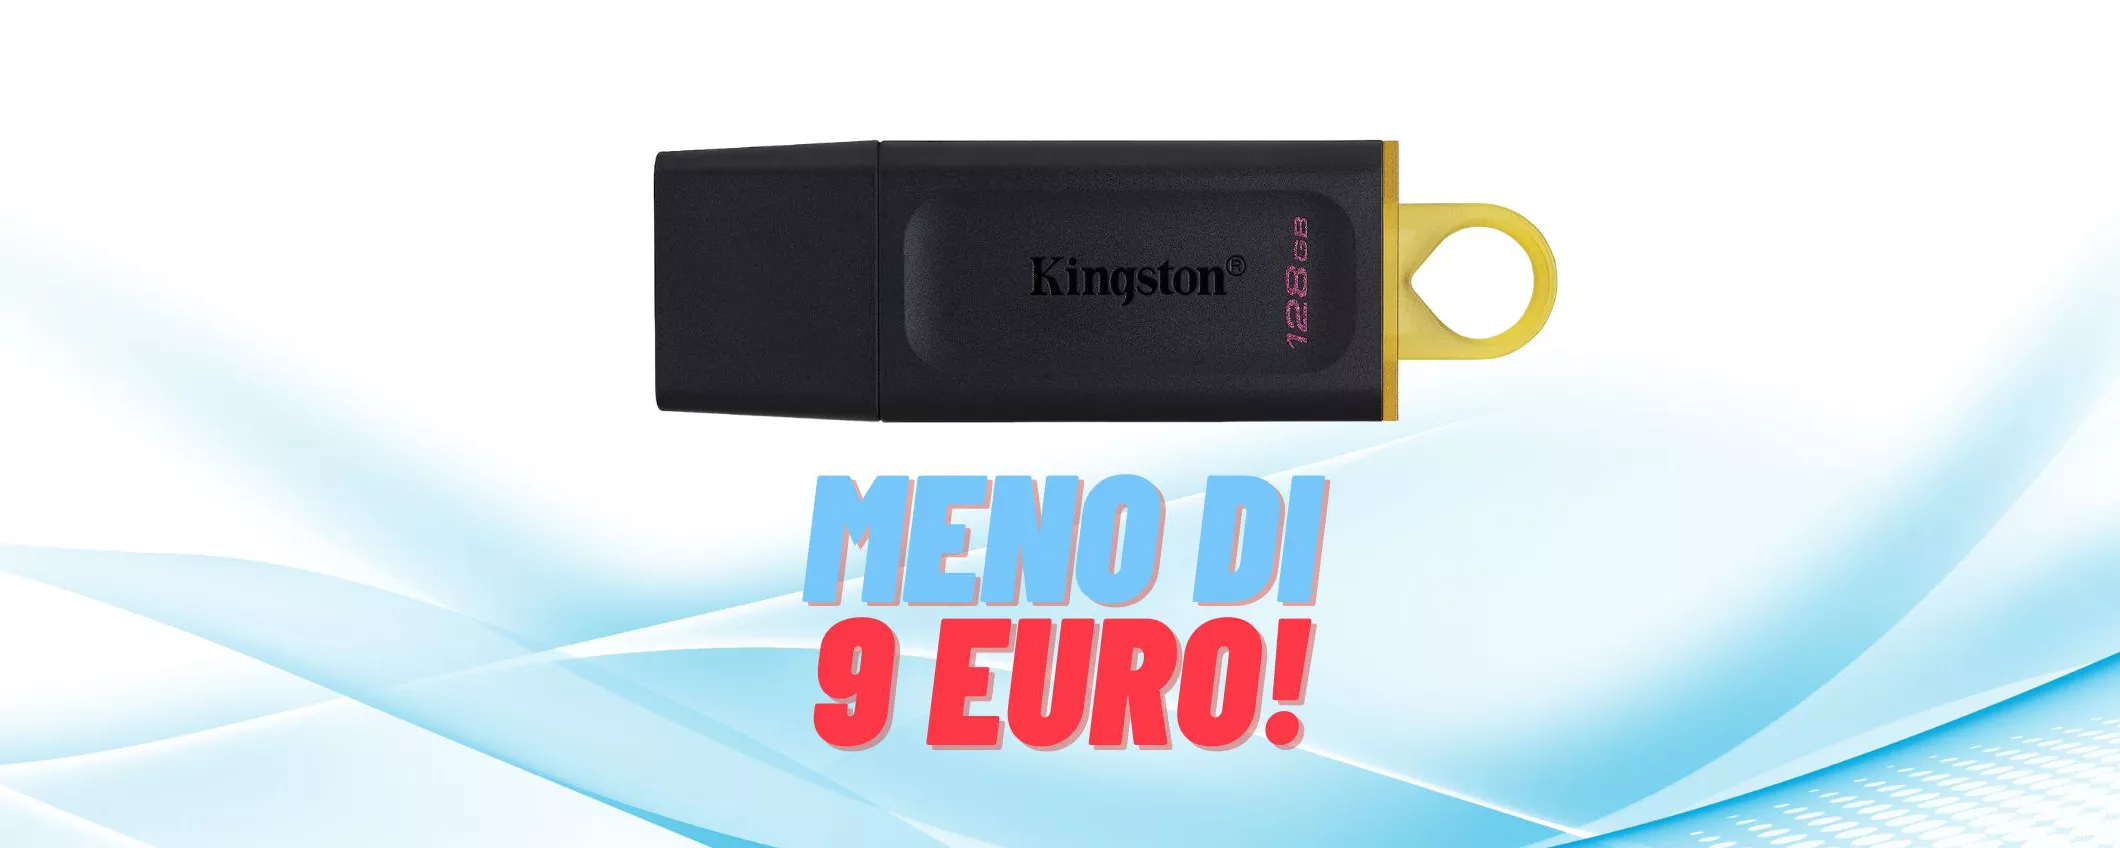 Kingston DataTraveler da 128GB in REGALO a meno di 9€ (-59%)